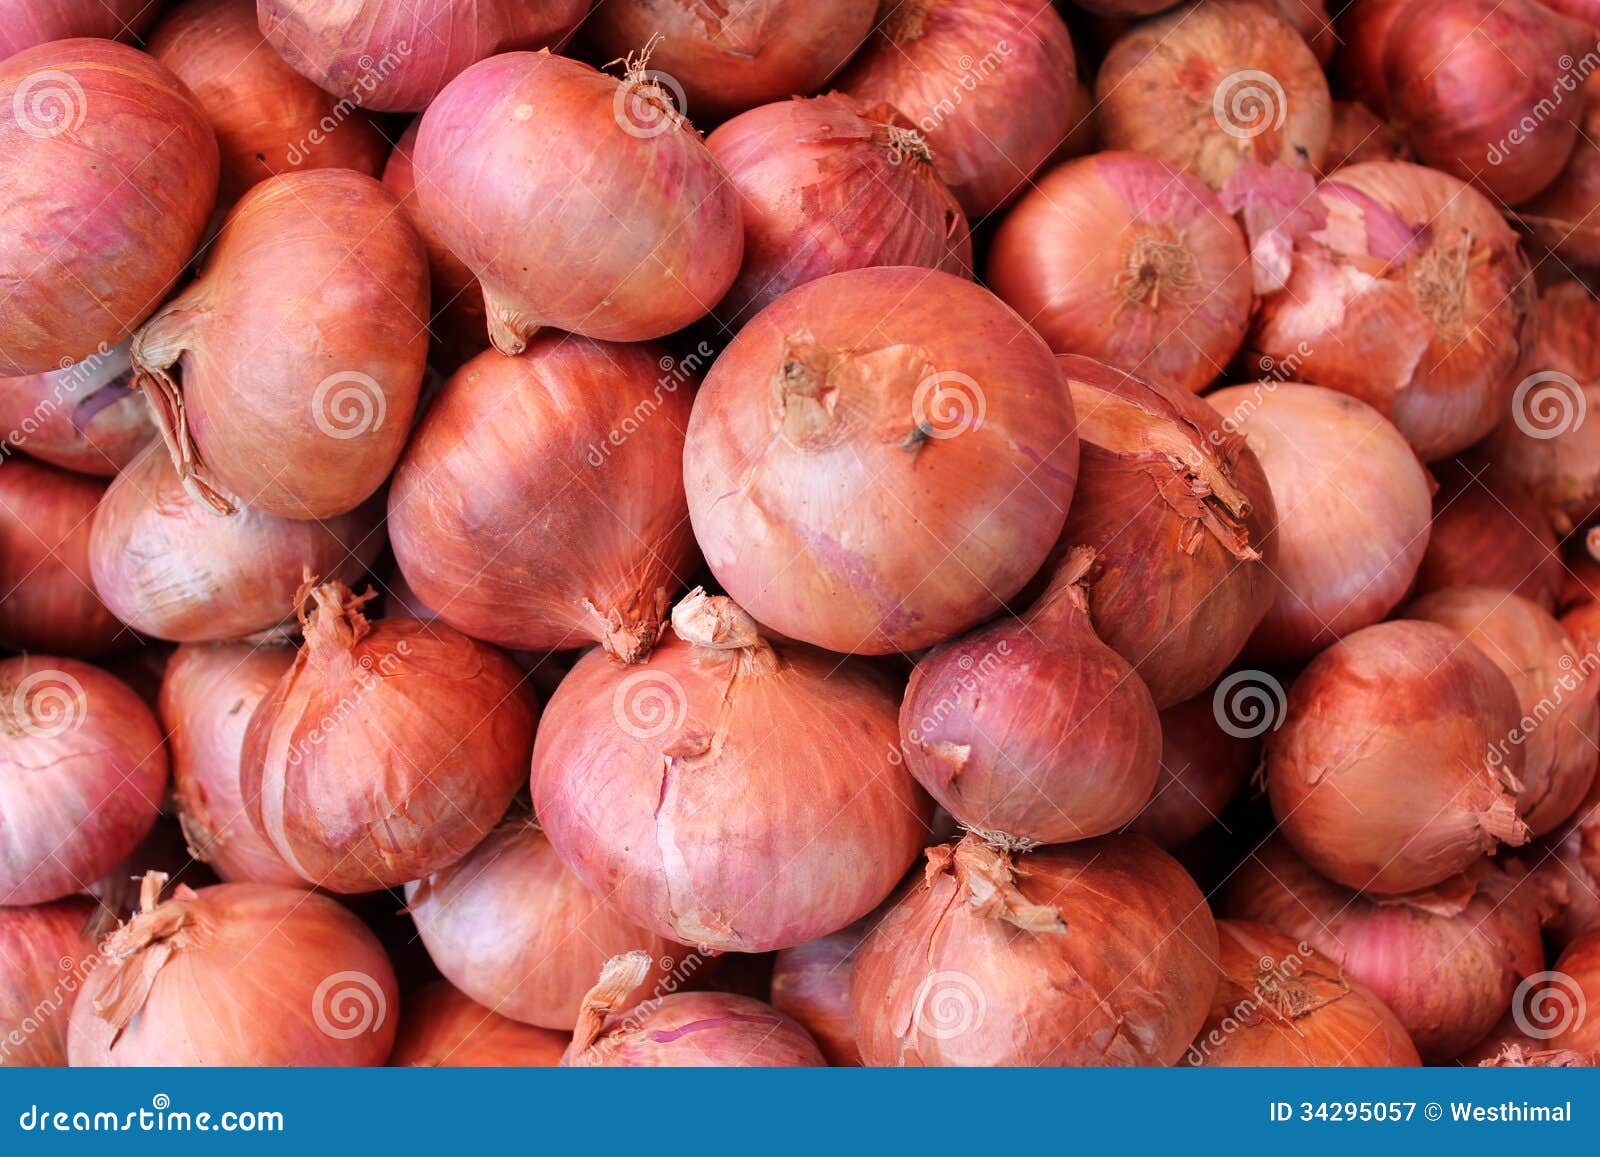 essay vegetable onion